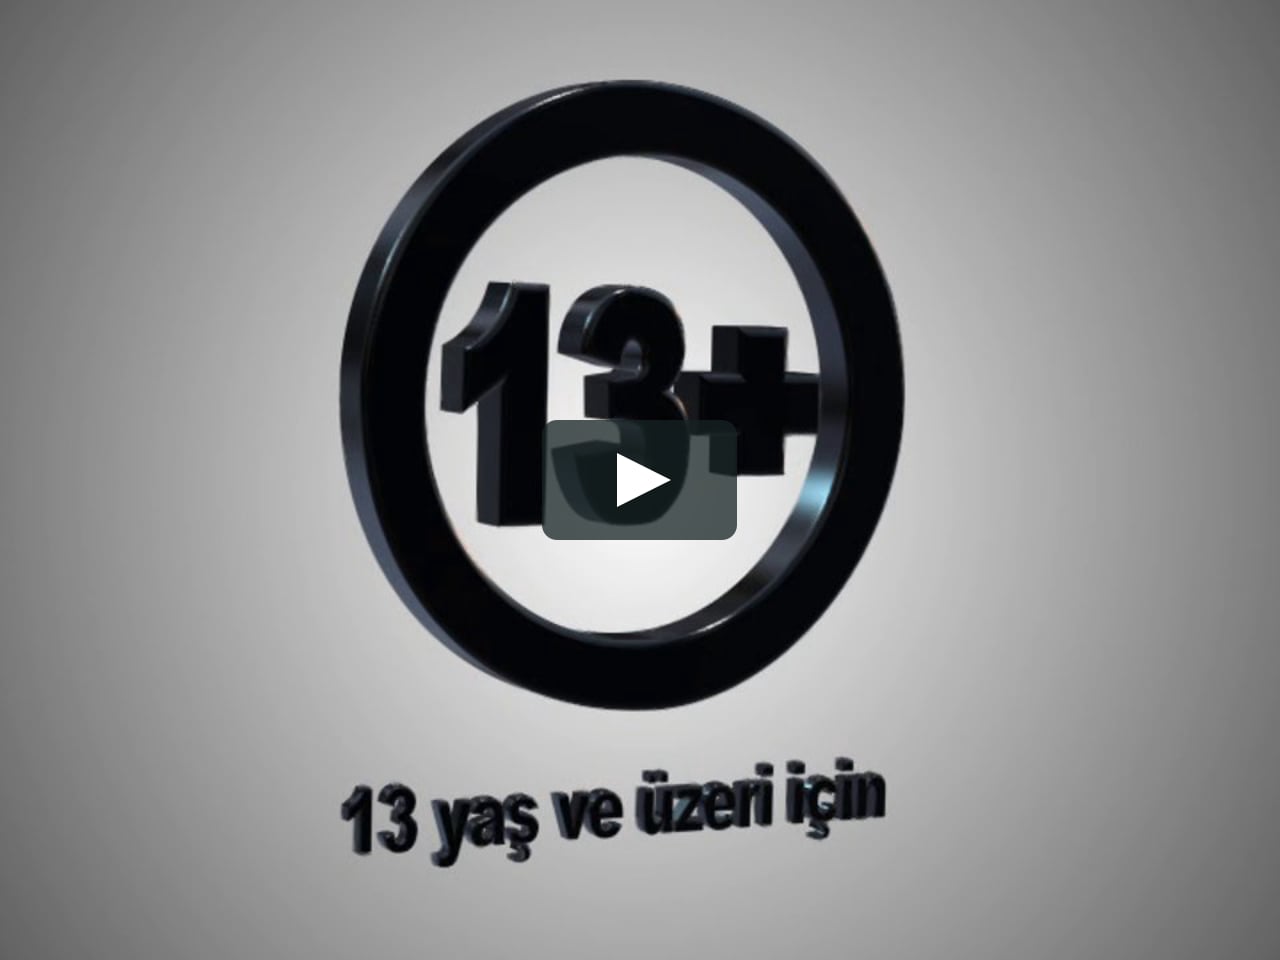 Akilli Isaretler 13 Yas 3d Hd On Vimeo